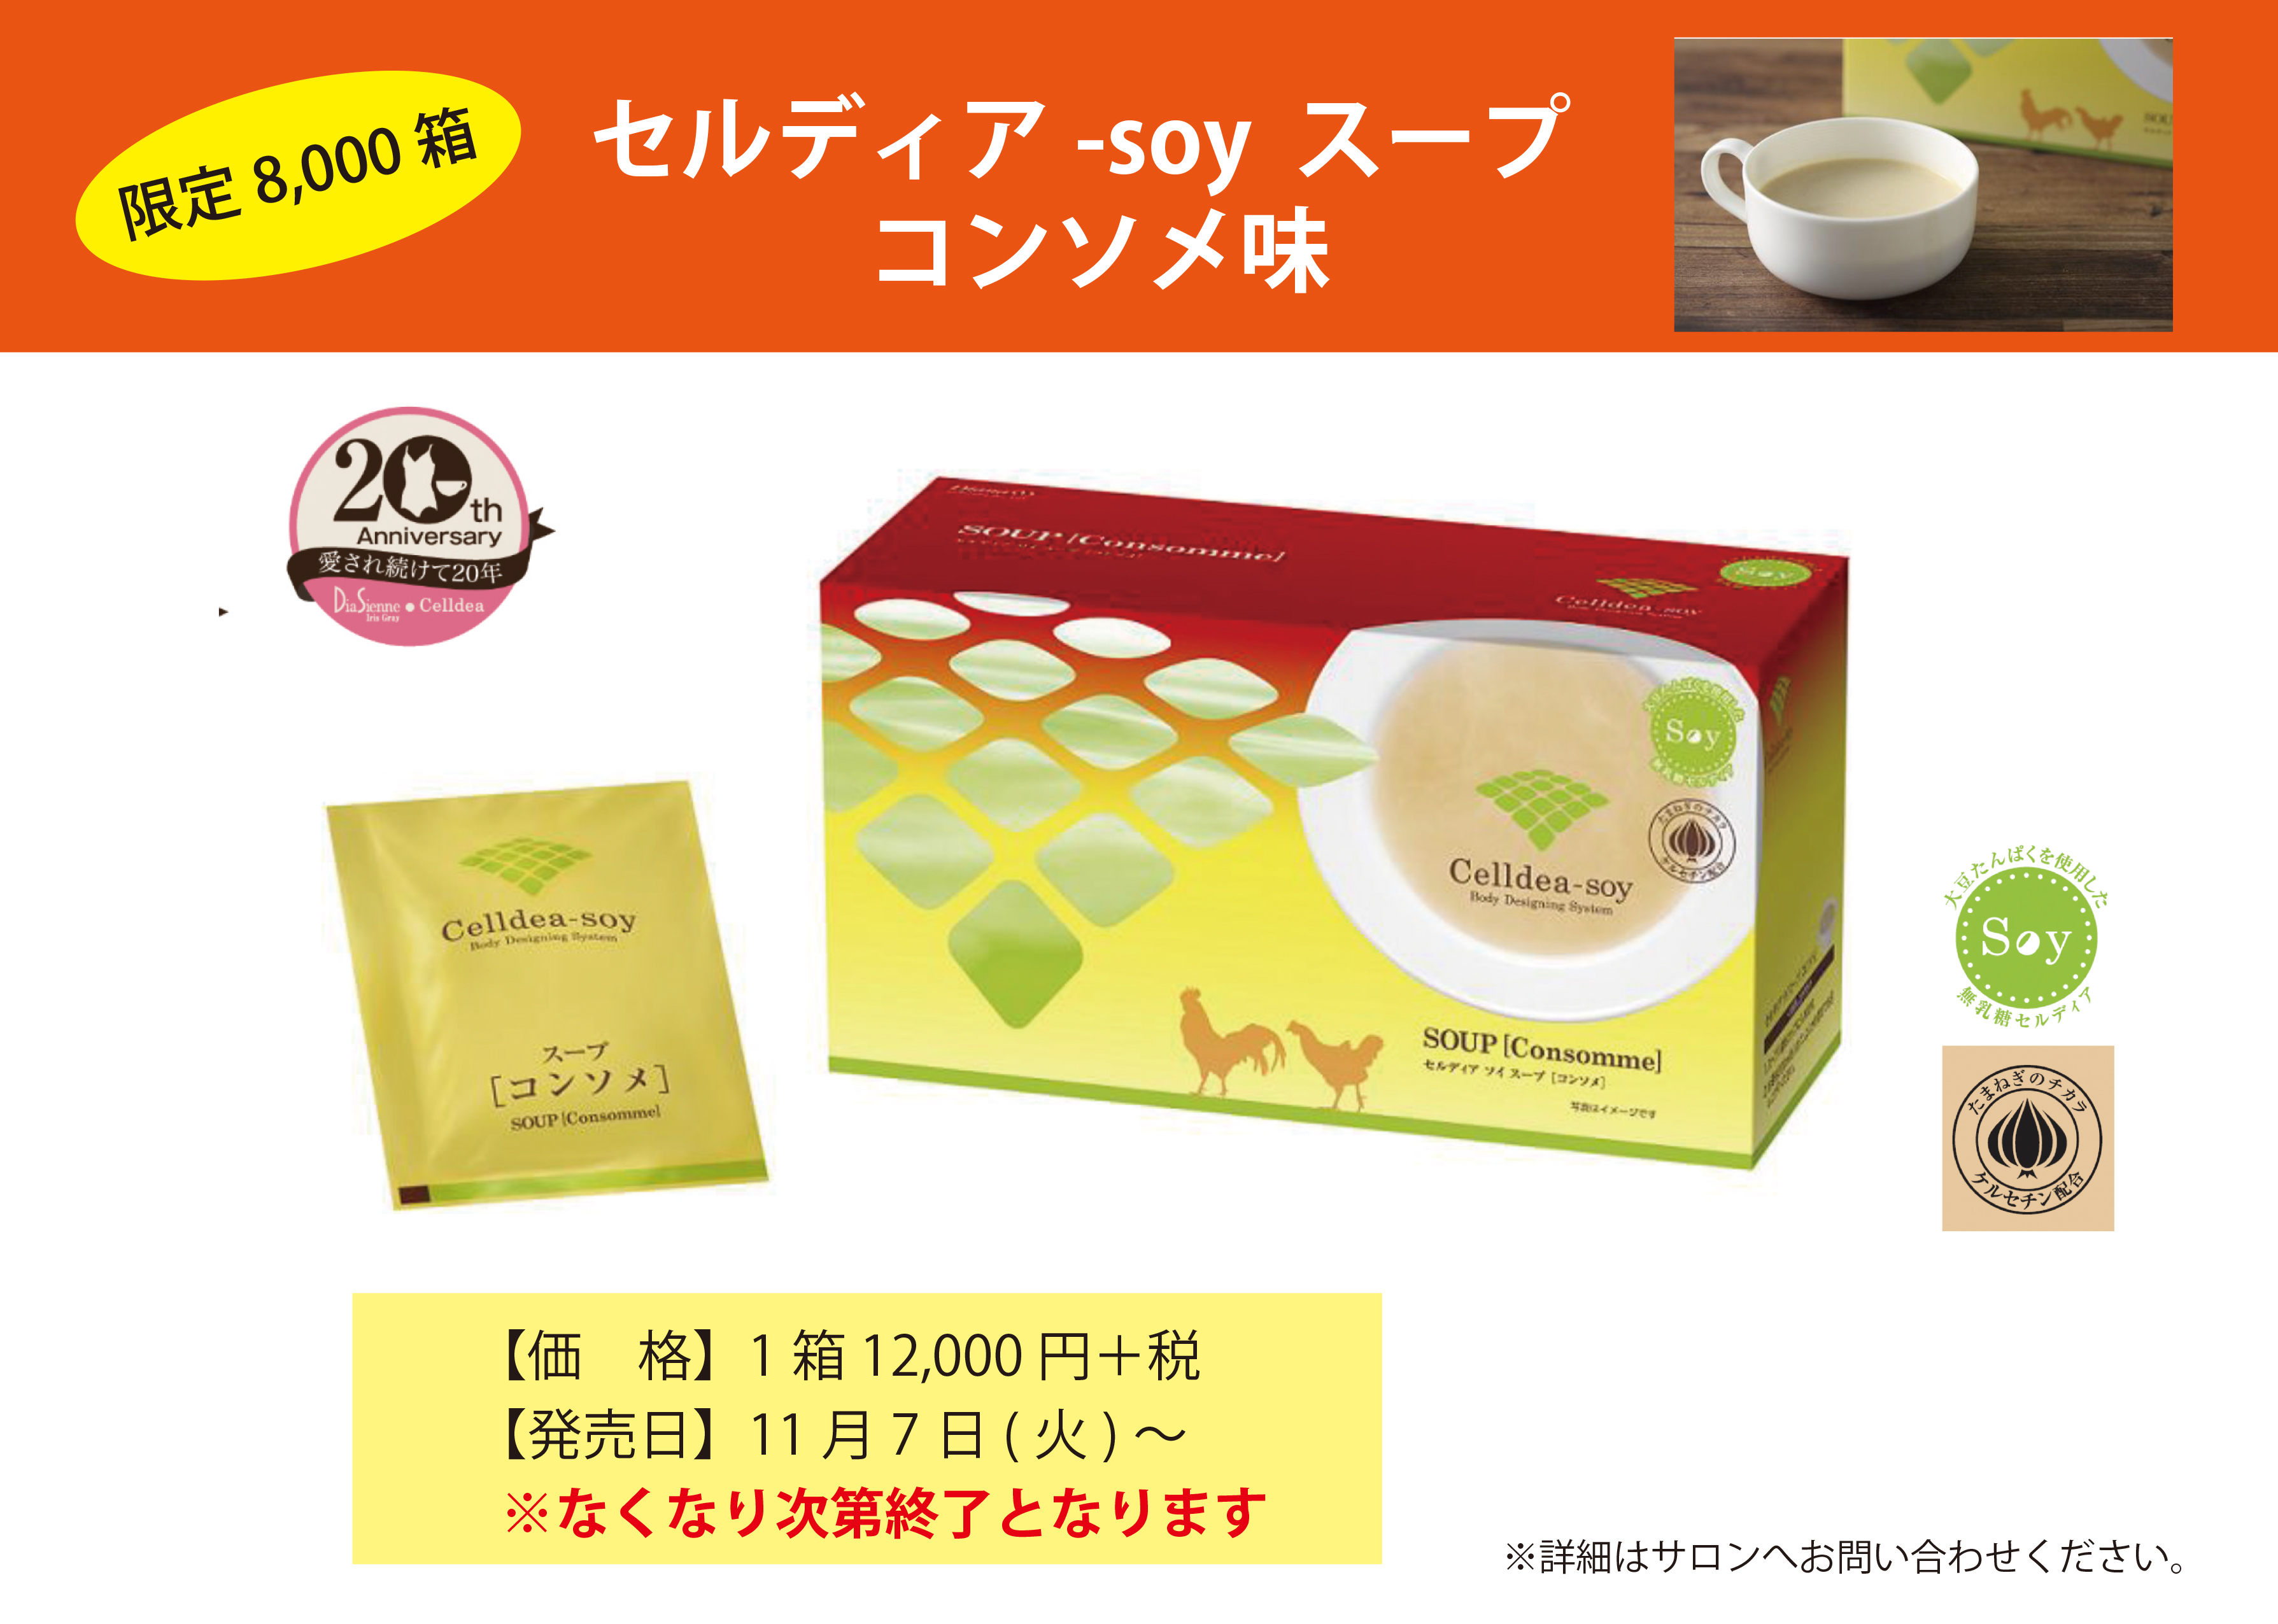 限定販売】セルディア-soy スープ コンソメ味 | プロポーションづくり 